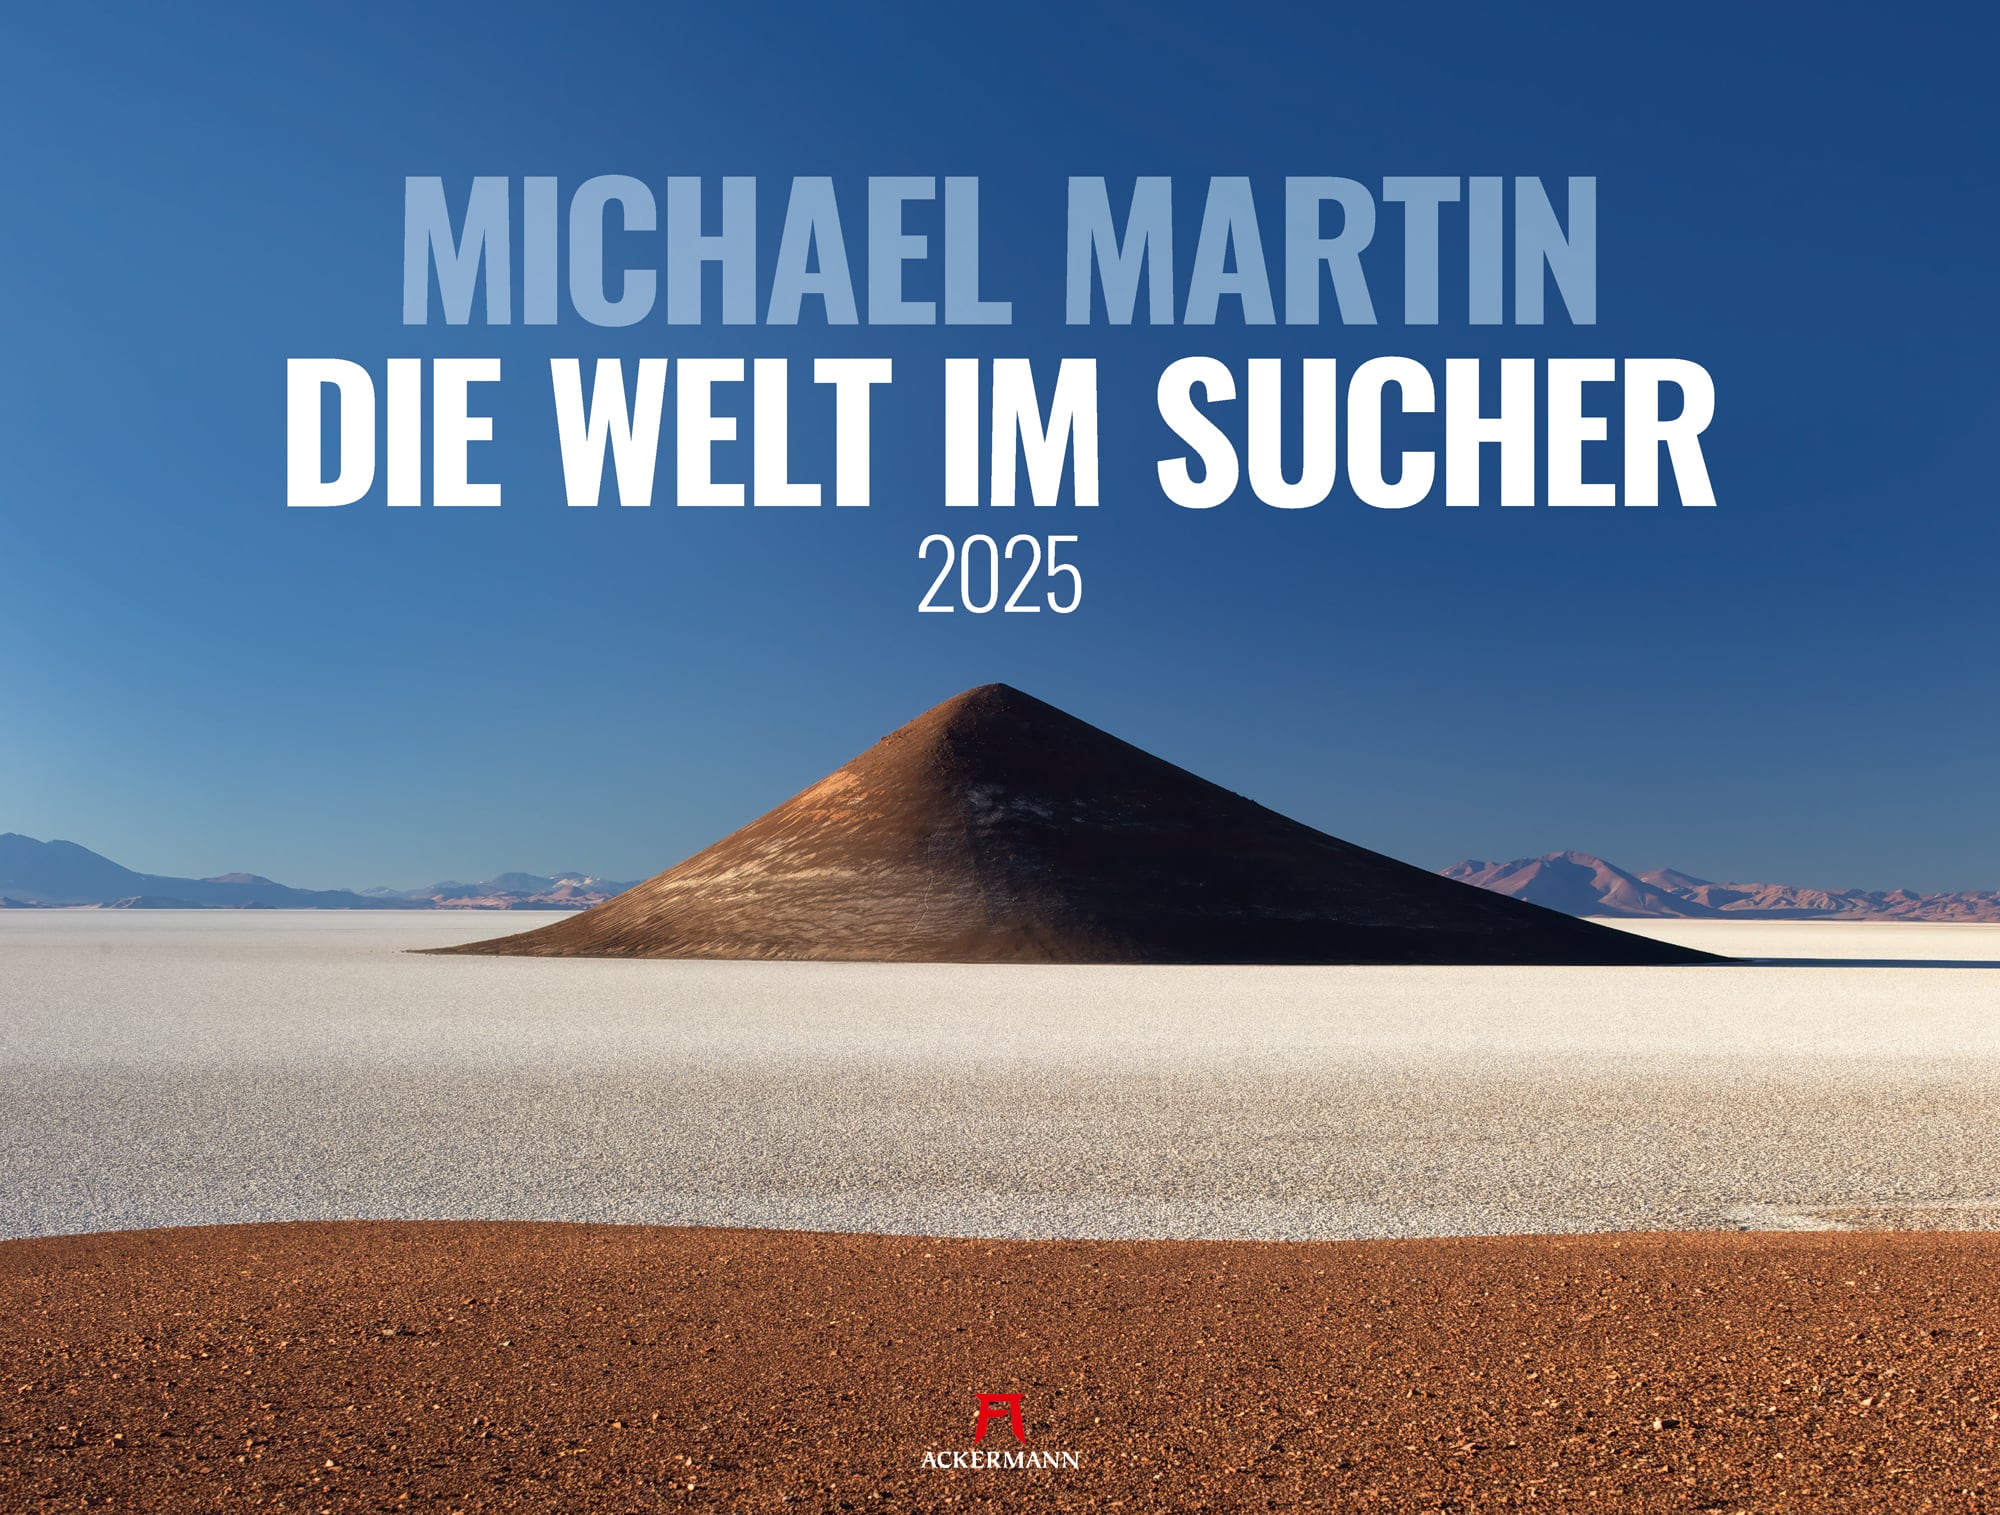 Ackermann Kalender Die Welt im Sucher - Michael Martin 2025 - Titelblatt